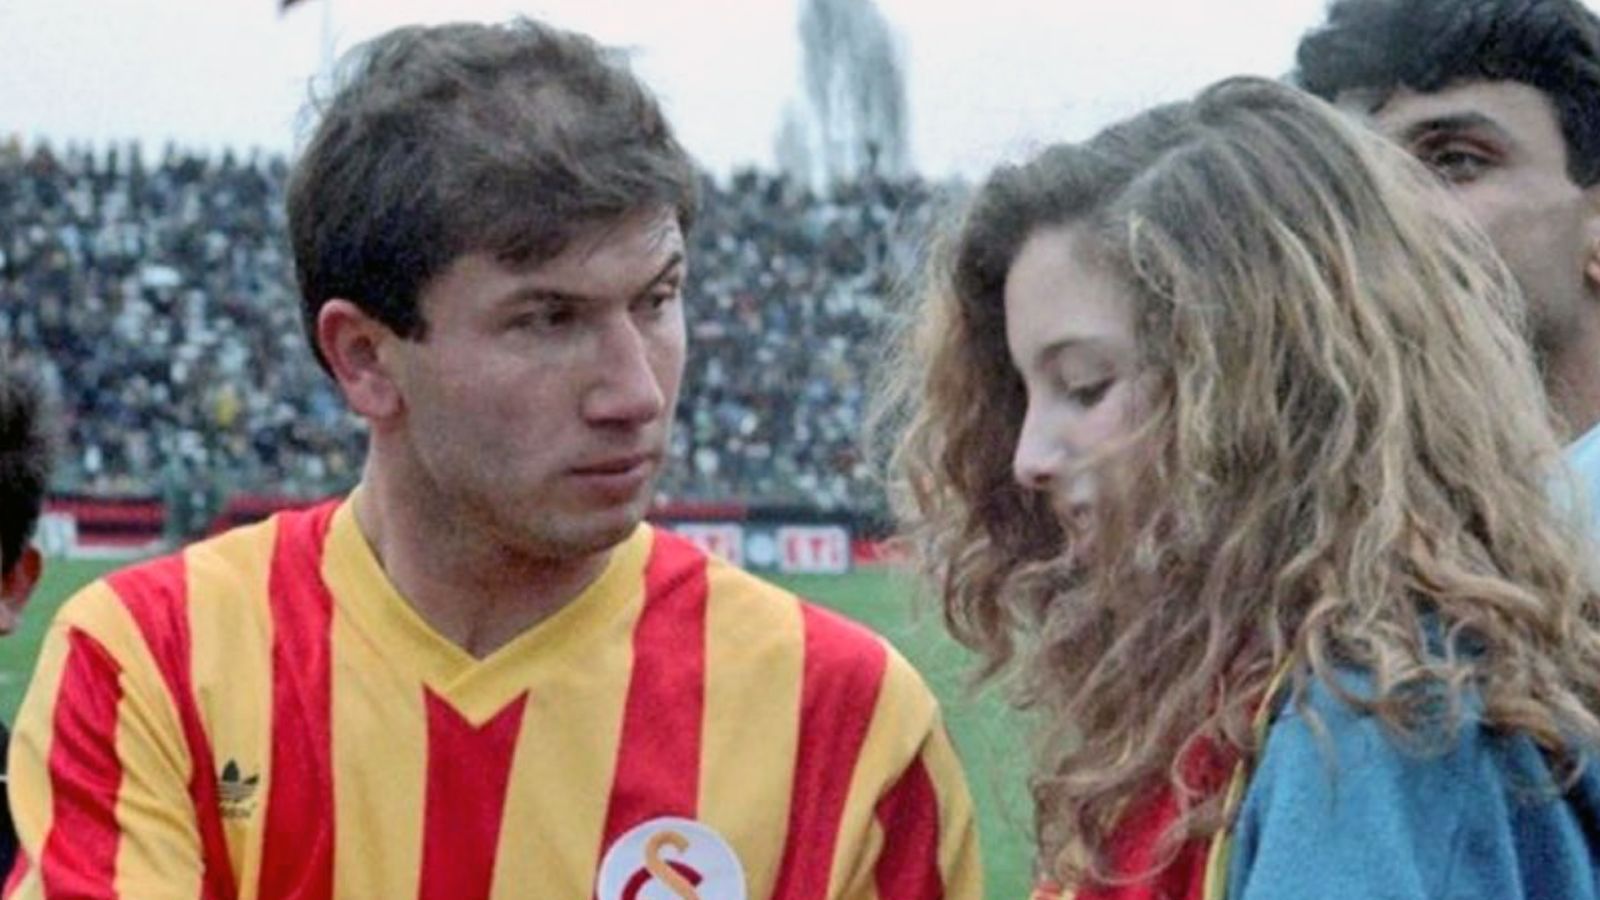 
                <strong>Süper Lig (Türkei)</strong><br>
                Tanju Colak erzielte in der Saison 1987/88 39 Saisontore in der Süper Lig für Galatasaray Istanbul. - Auf Platz 2 liegt Hakan Sükür mit 38 Saisontoren in der Süper Lig in der Spielzeit 1996/97 für Galatasaray Istanbul.
              